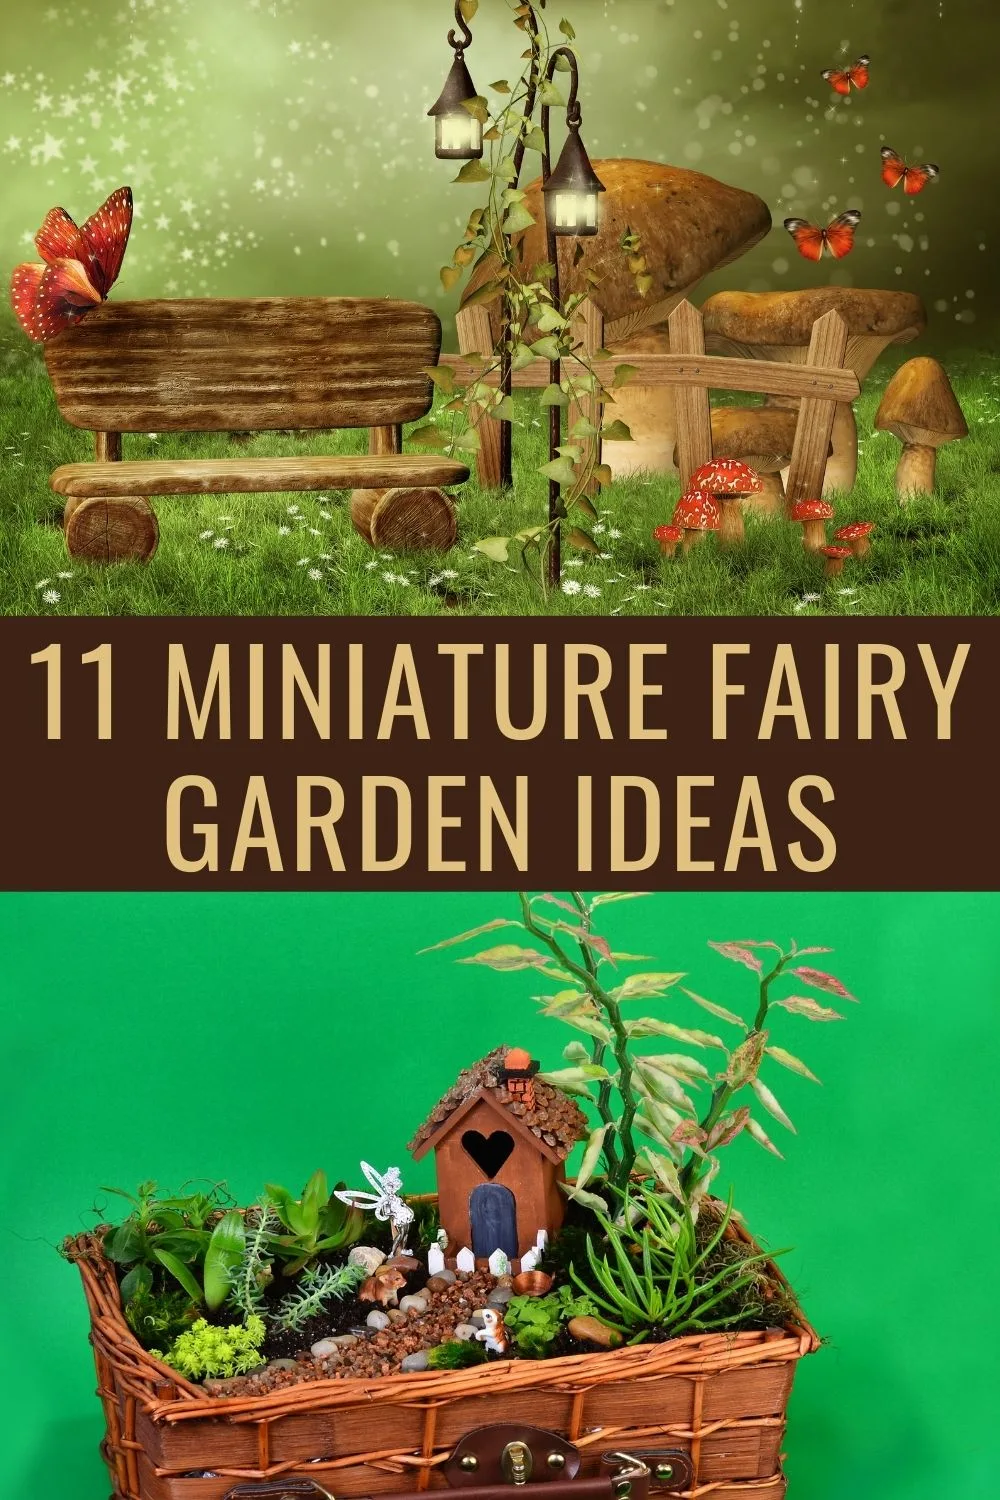 11 miniature fairy garden ideas